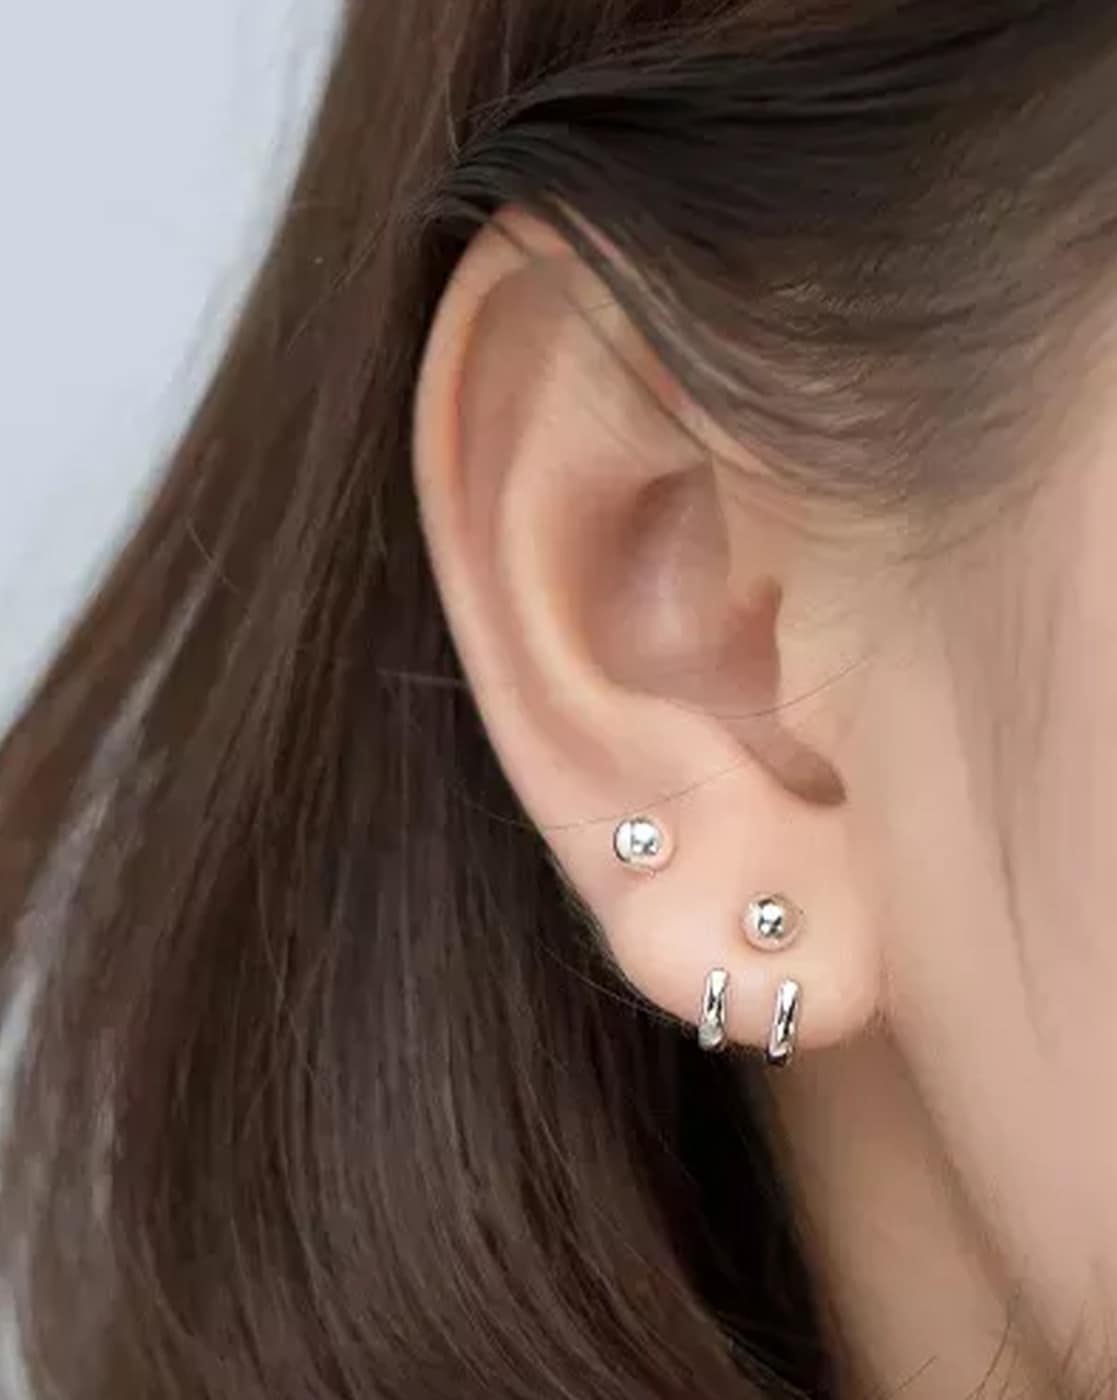 Buy Double Piercing Earring, Stud Earring, Double Piercing Earring Set,  Double Piercing, Multiple Piercing Earring, Double Studs Online in India -  Etsy